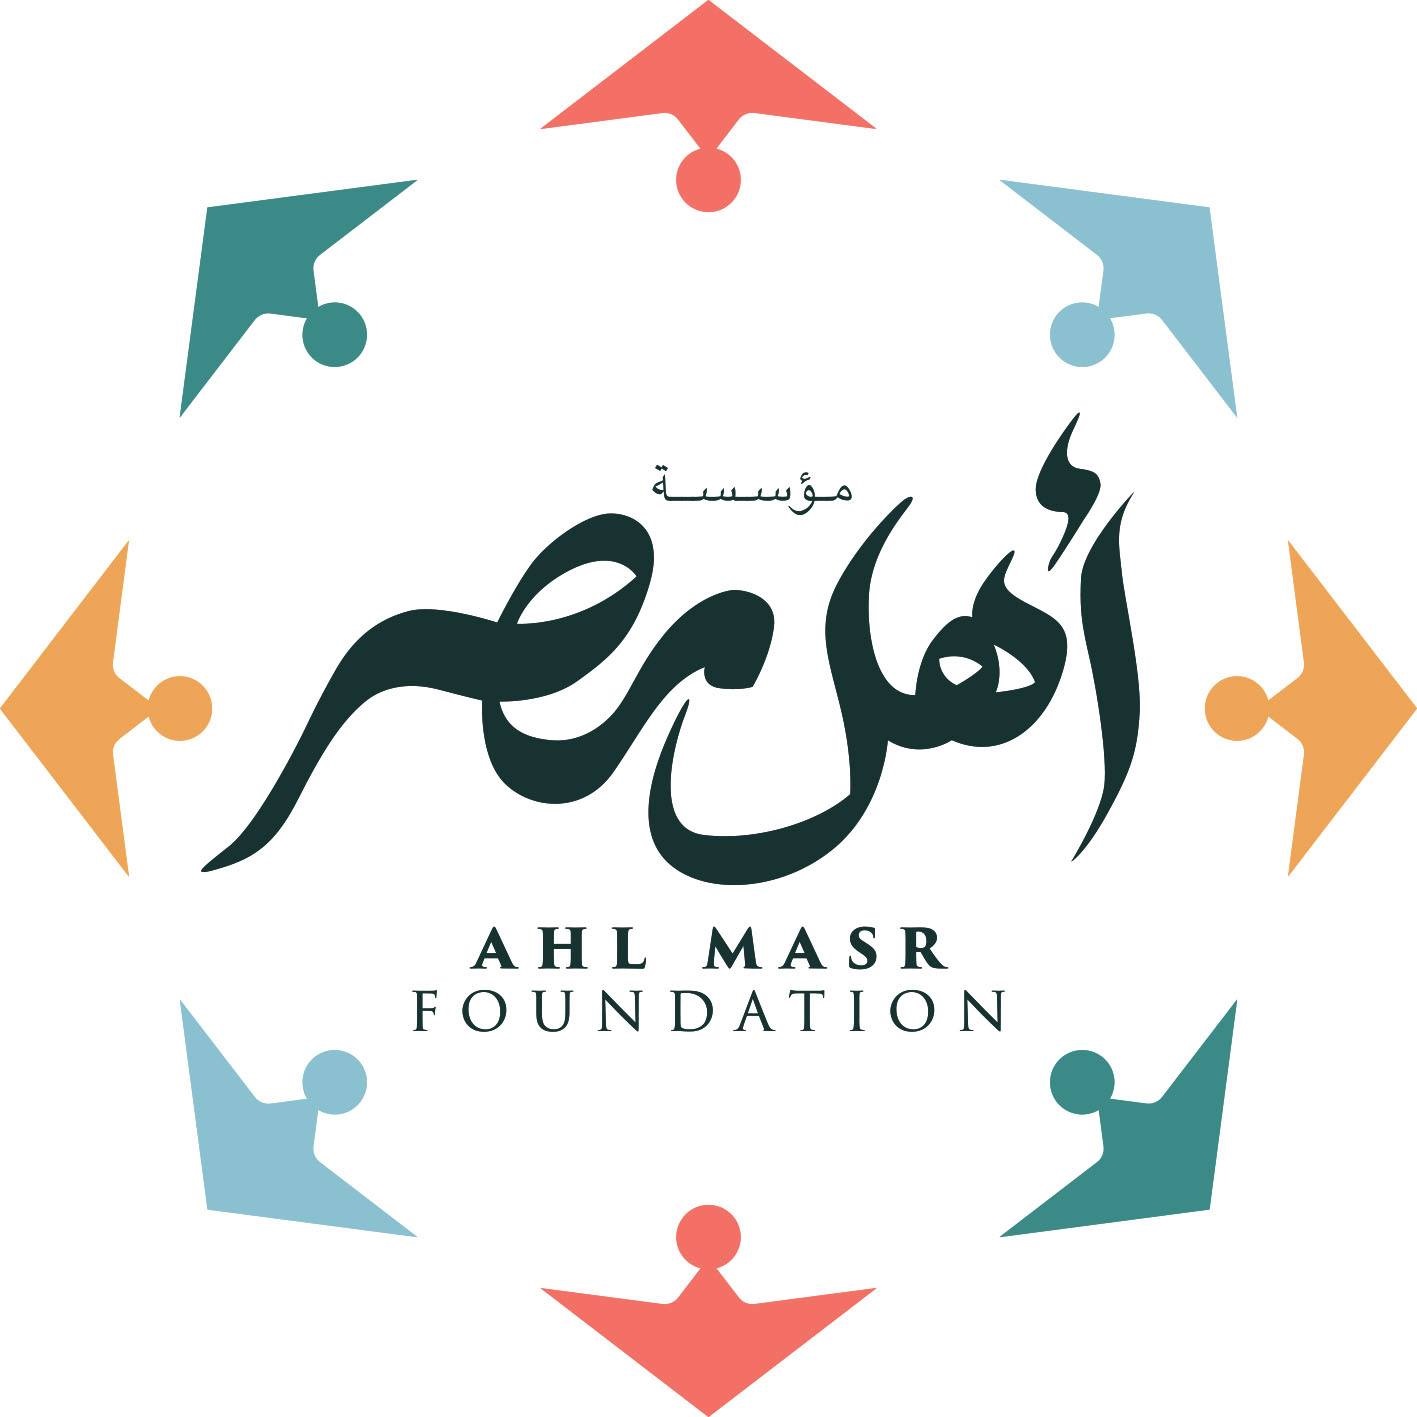 Ahl masr foundation